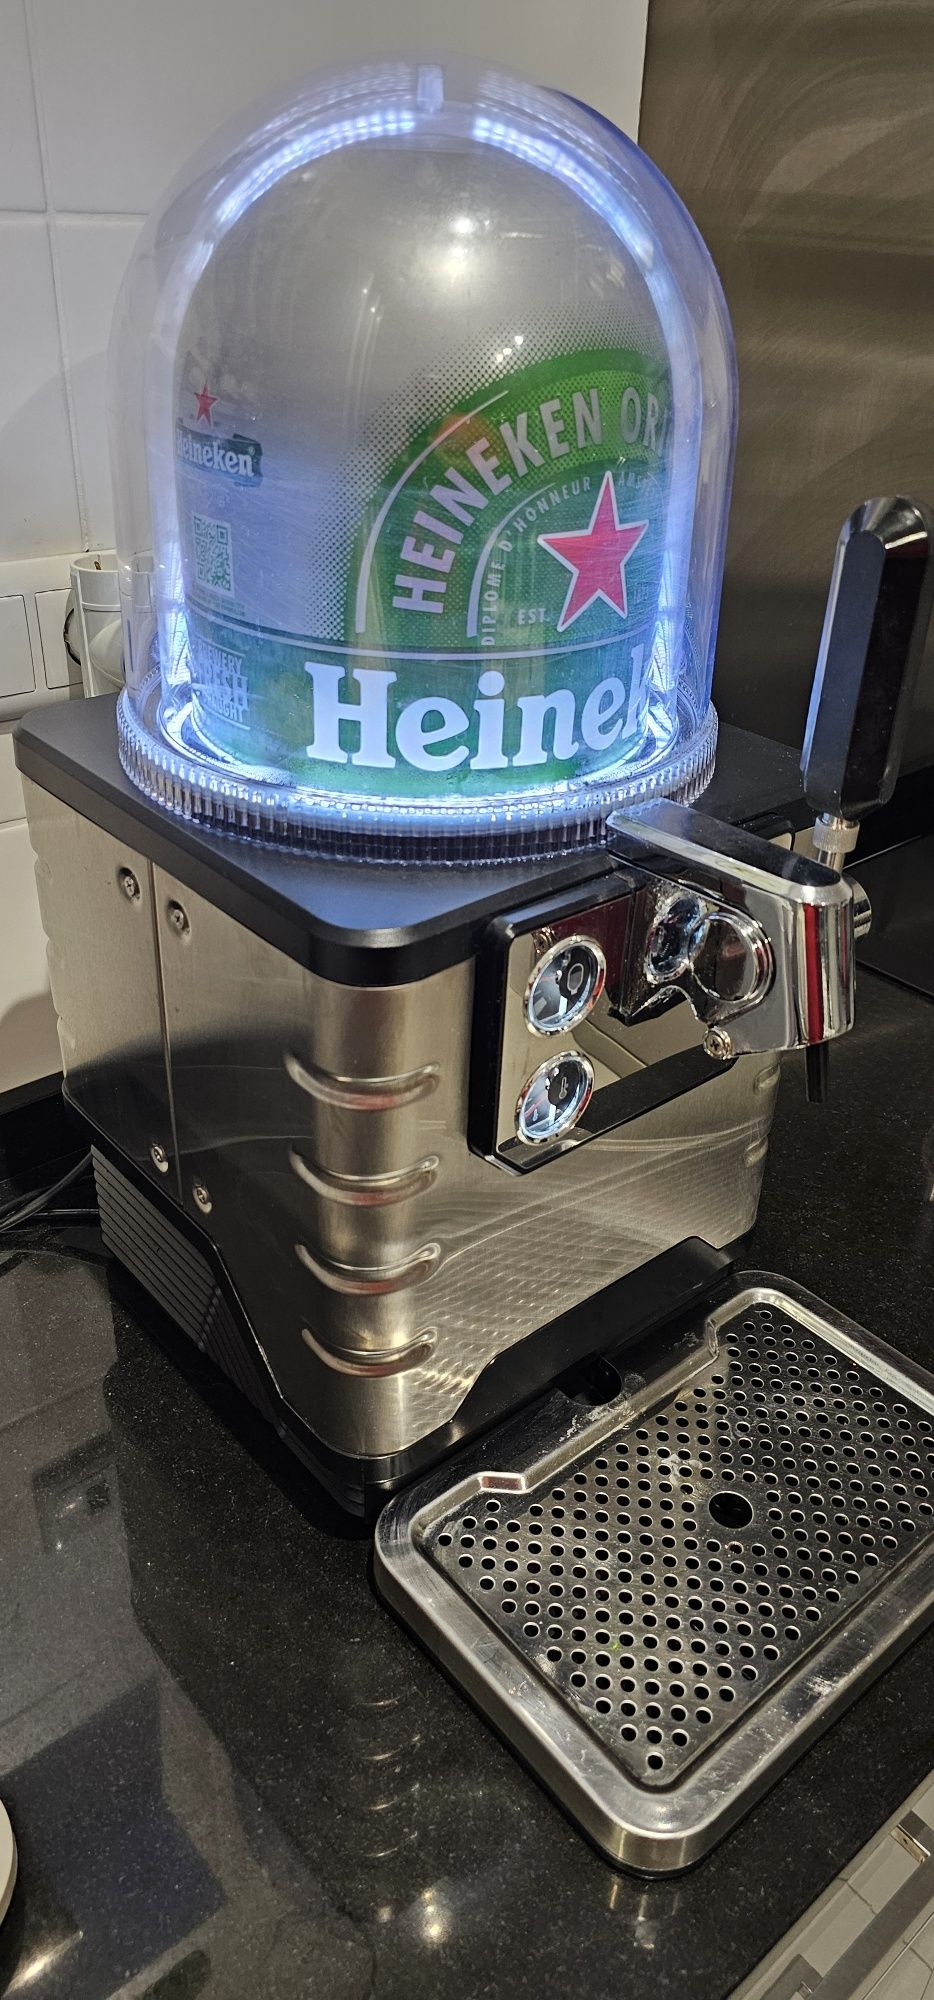 Maquina de Heineken